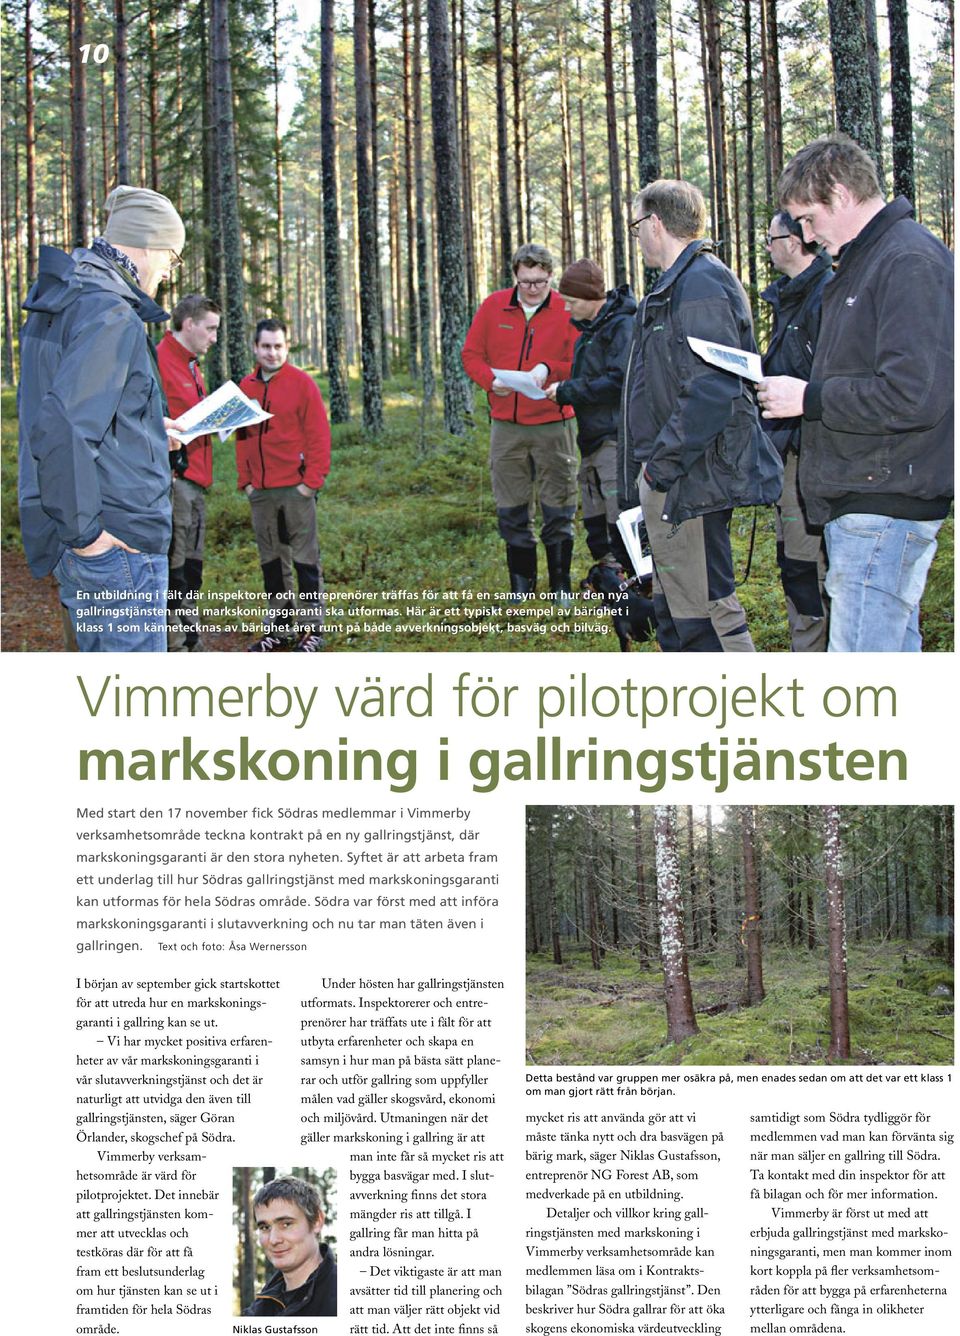 Vimmerby värd för pilotprojekt om markskoning i gallringstjänsten Med start den 17 november fick Södras medlemmar i Vimmerby verksamhetsområde teckna kontrakt på en ny gallringstjänst, där